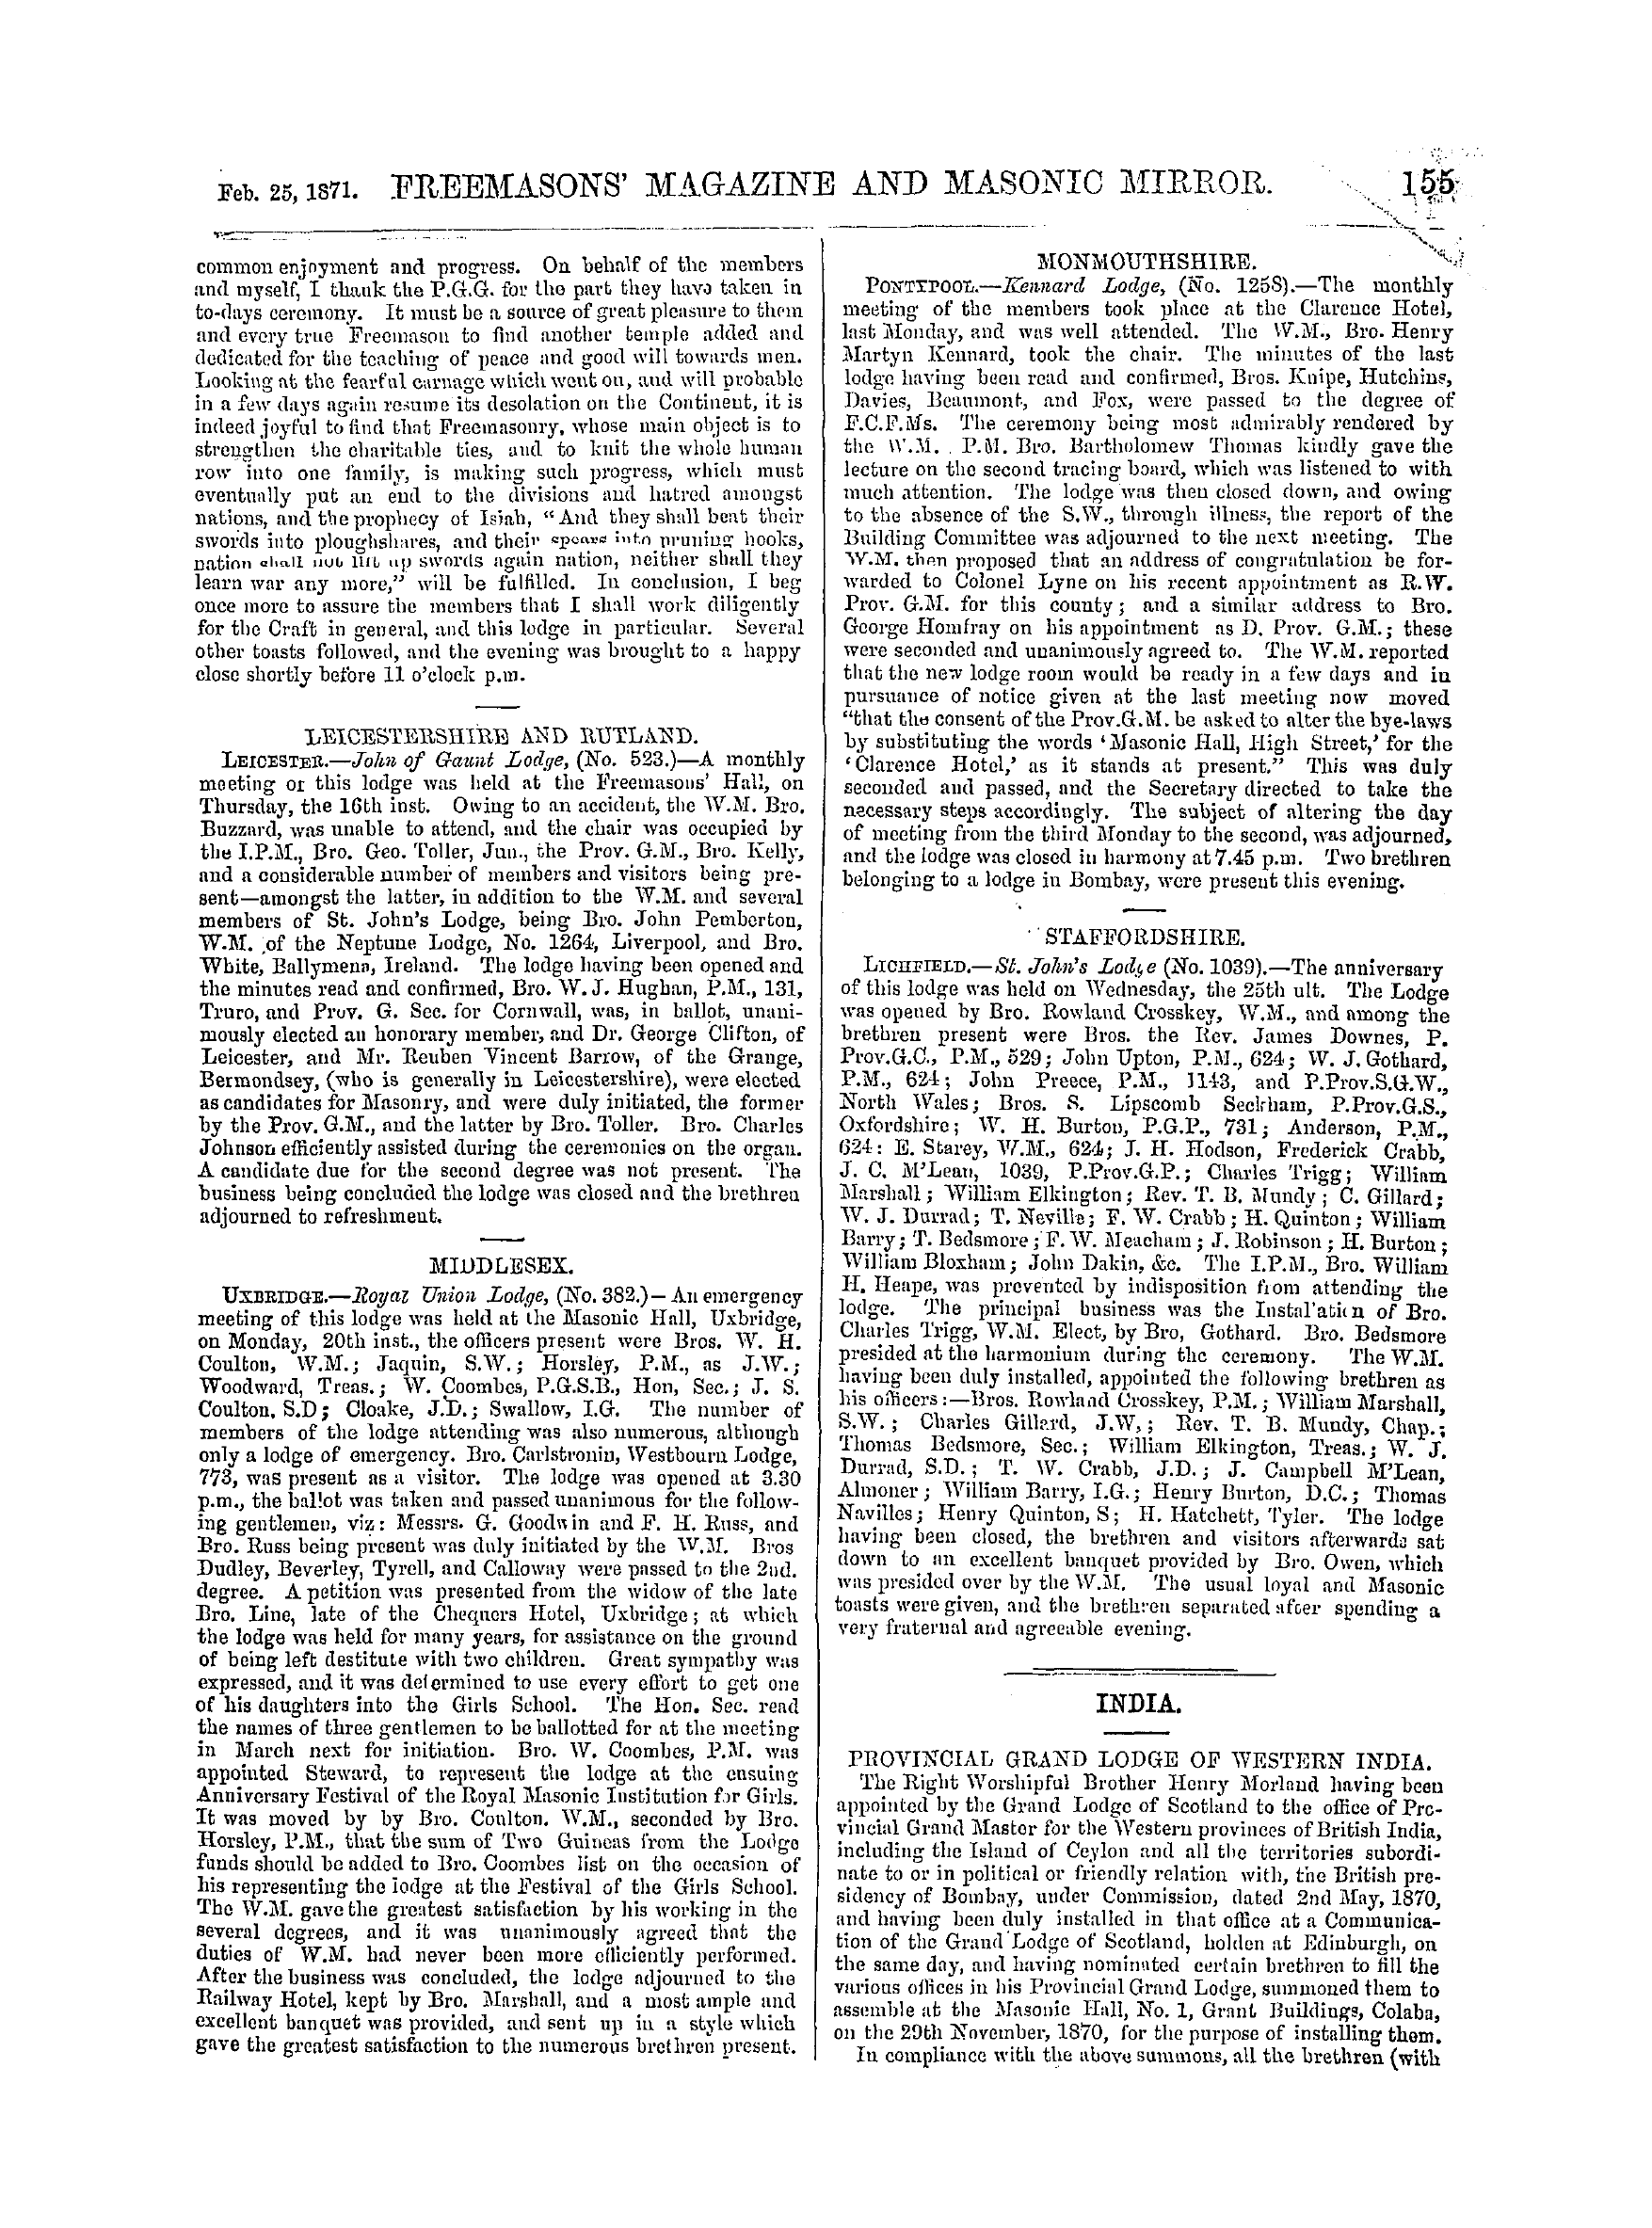 The Freemasons' Monthly Magazine: 1871-02-25 - India.